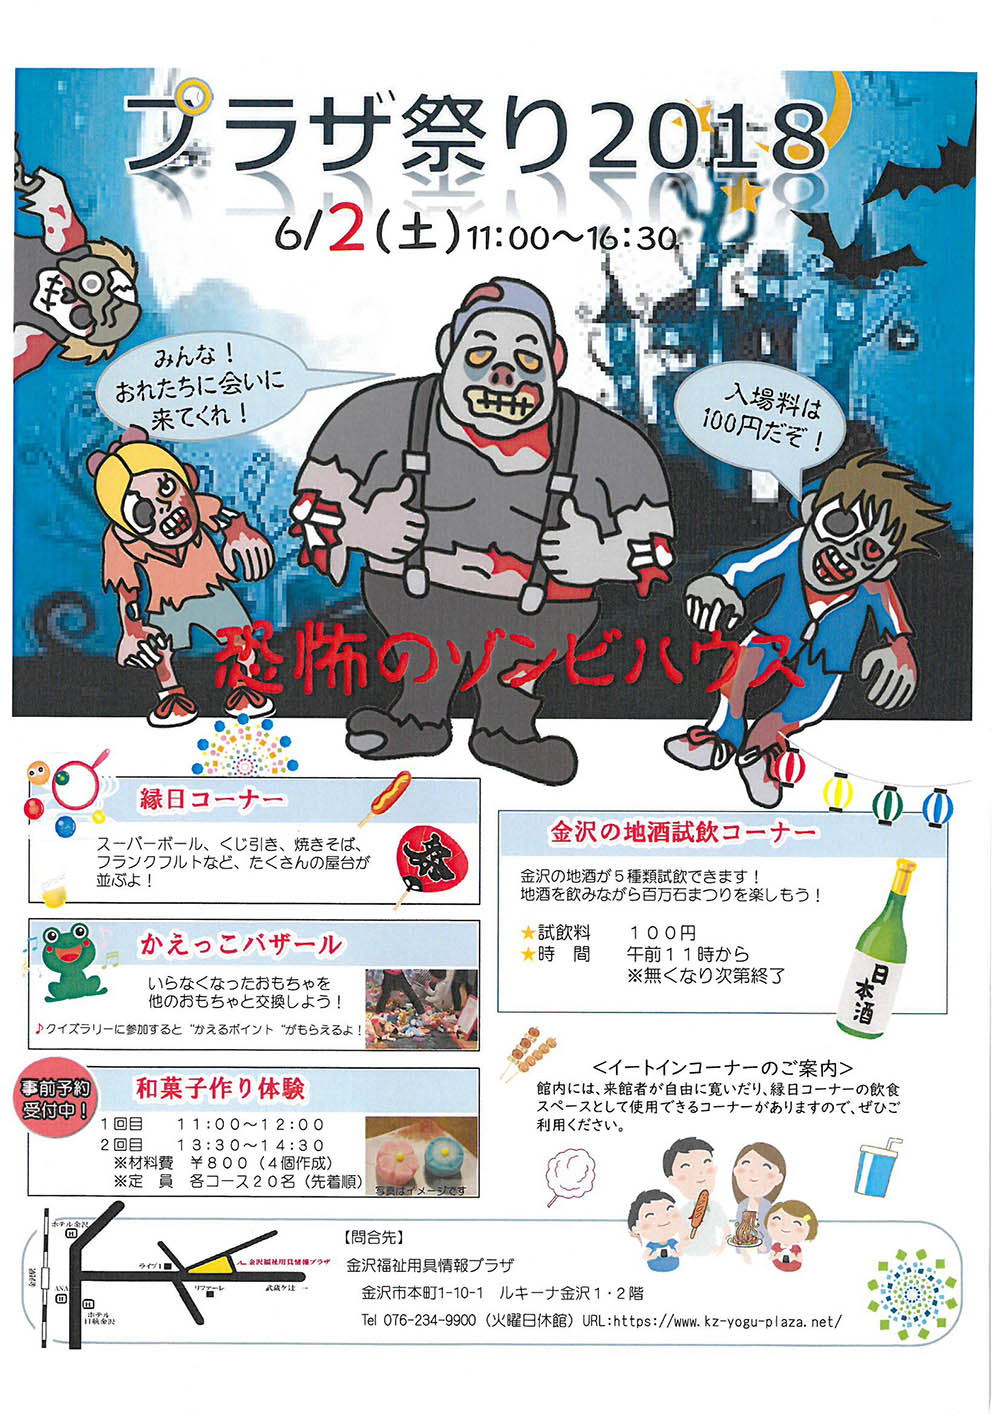 イベント 6月2日 土 にプラザ祭り18開催 恐怖のゾンビハウスが登場 いいじ金沢